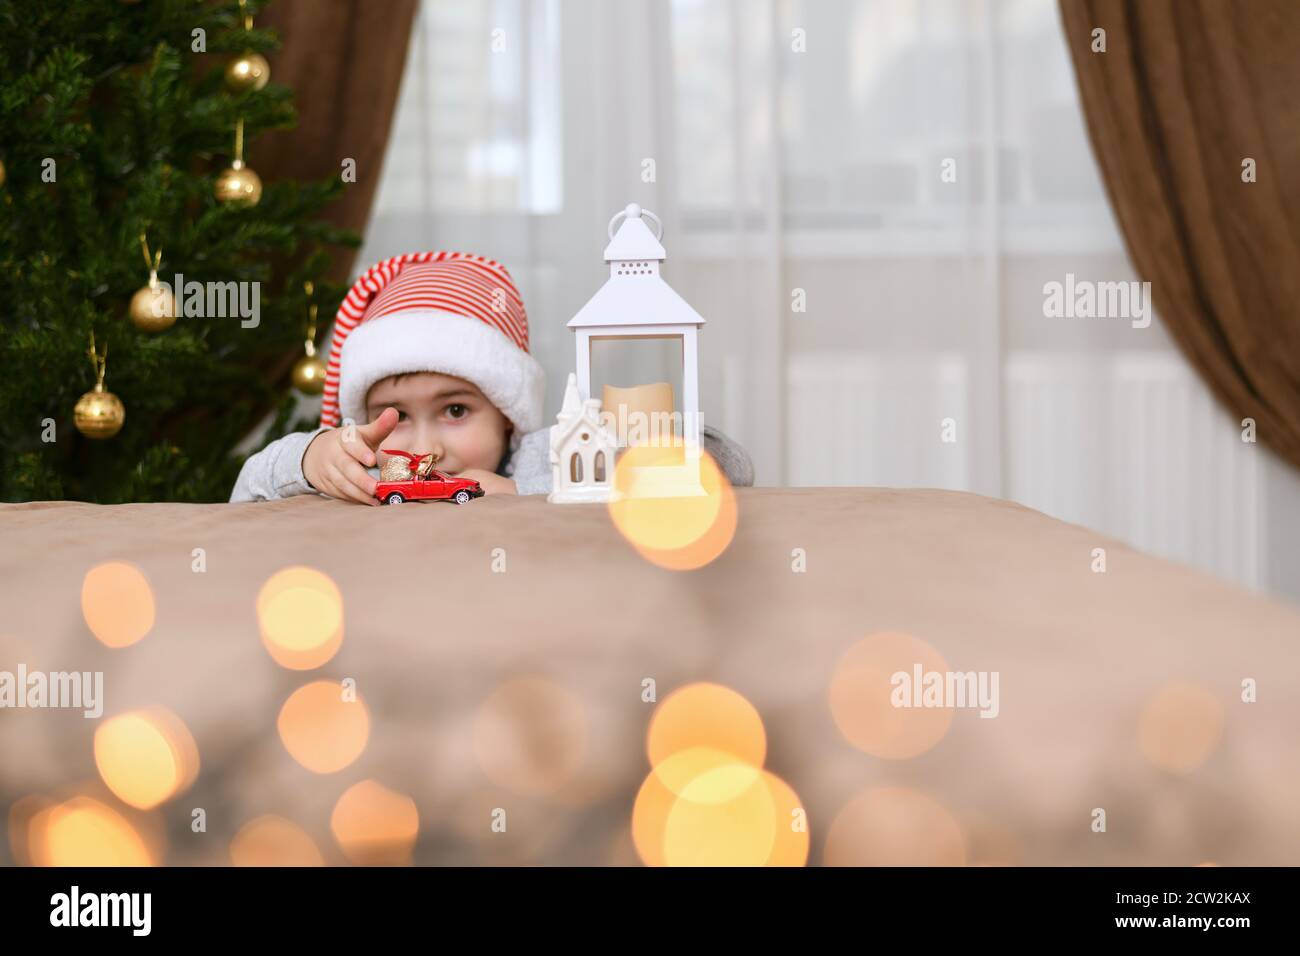 Un garçon vêtu d'une casquette rayée joue avec une voiture rouge, pousse, près de l'arbre de Noël près de la lanterne avec une maison . Banque D'Images